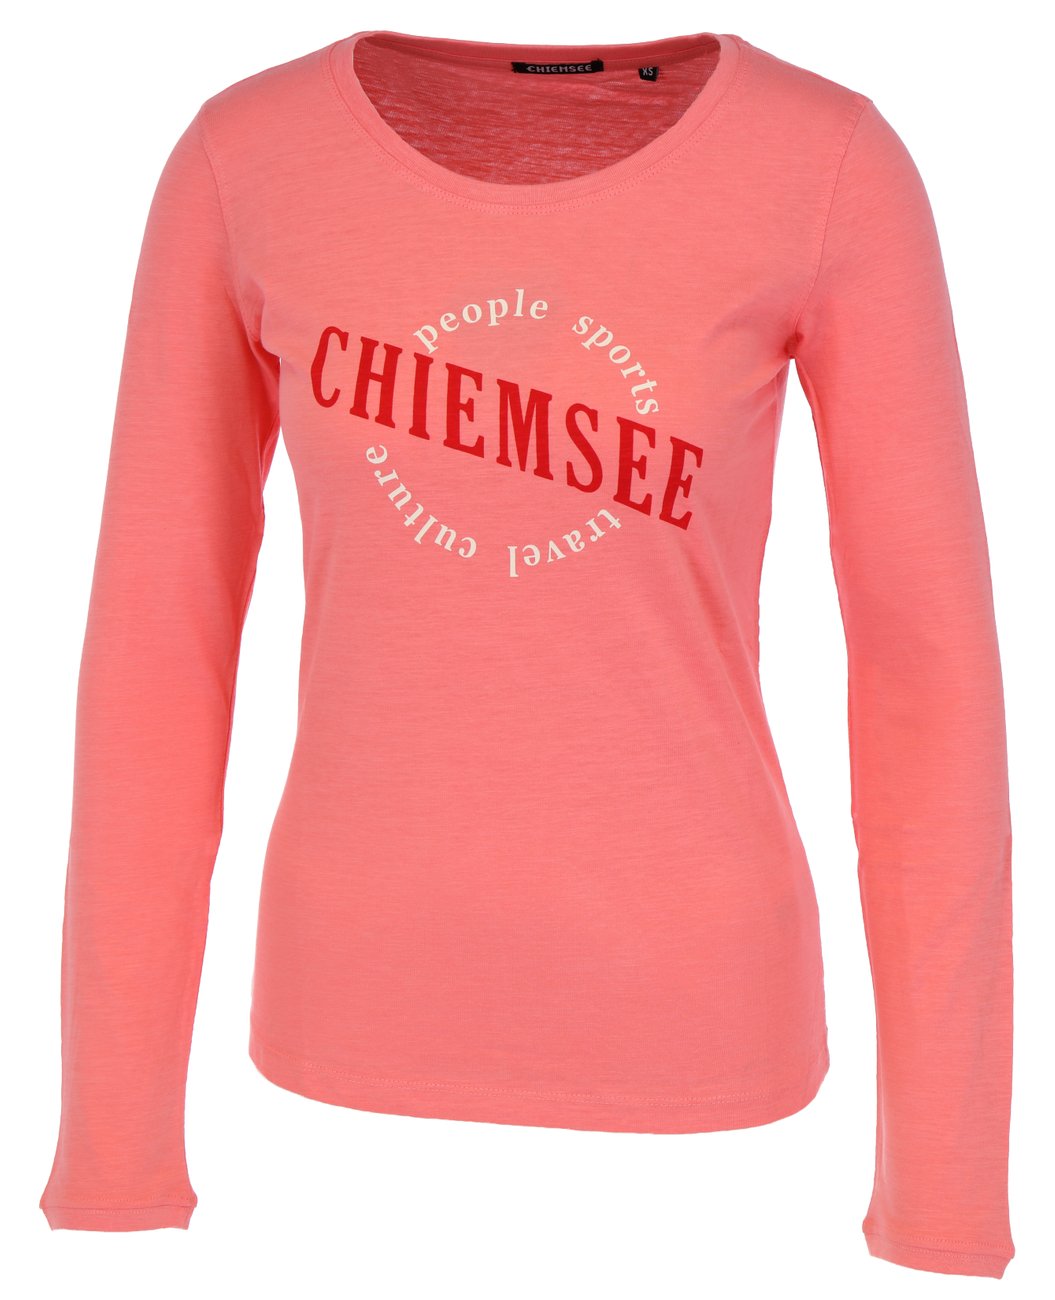 CHIEMSEE WOMEN T-SHIRT REGULAR FIT Damen Langarmshirt - Chiemsee - SAGATOO - 4054583643587